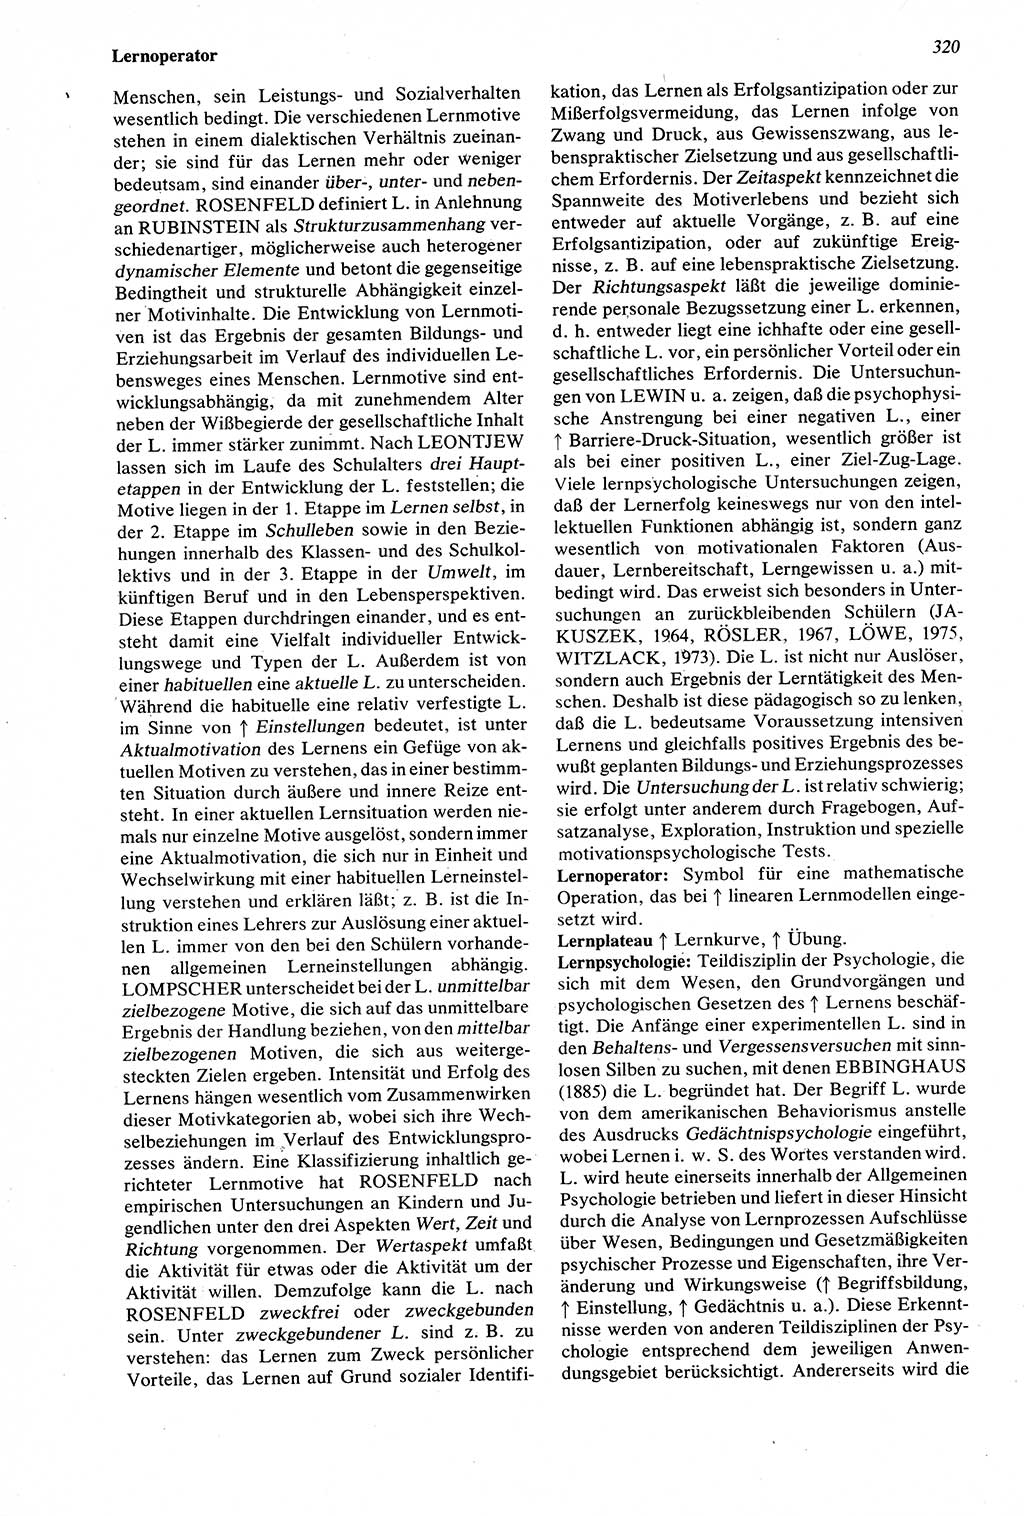 Wörterbuch der Psychologie [Deutsche Demokratische Republik (DDR)] 1976, Seite 320 (Wb. Psych. DDR 1976, S. 320)